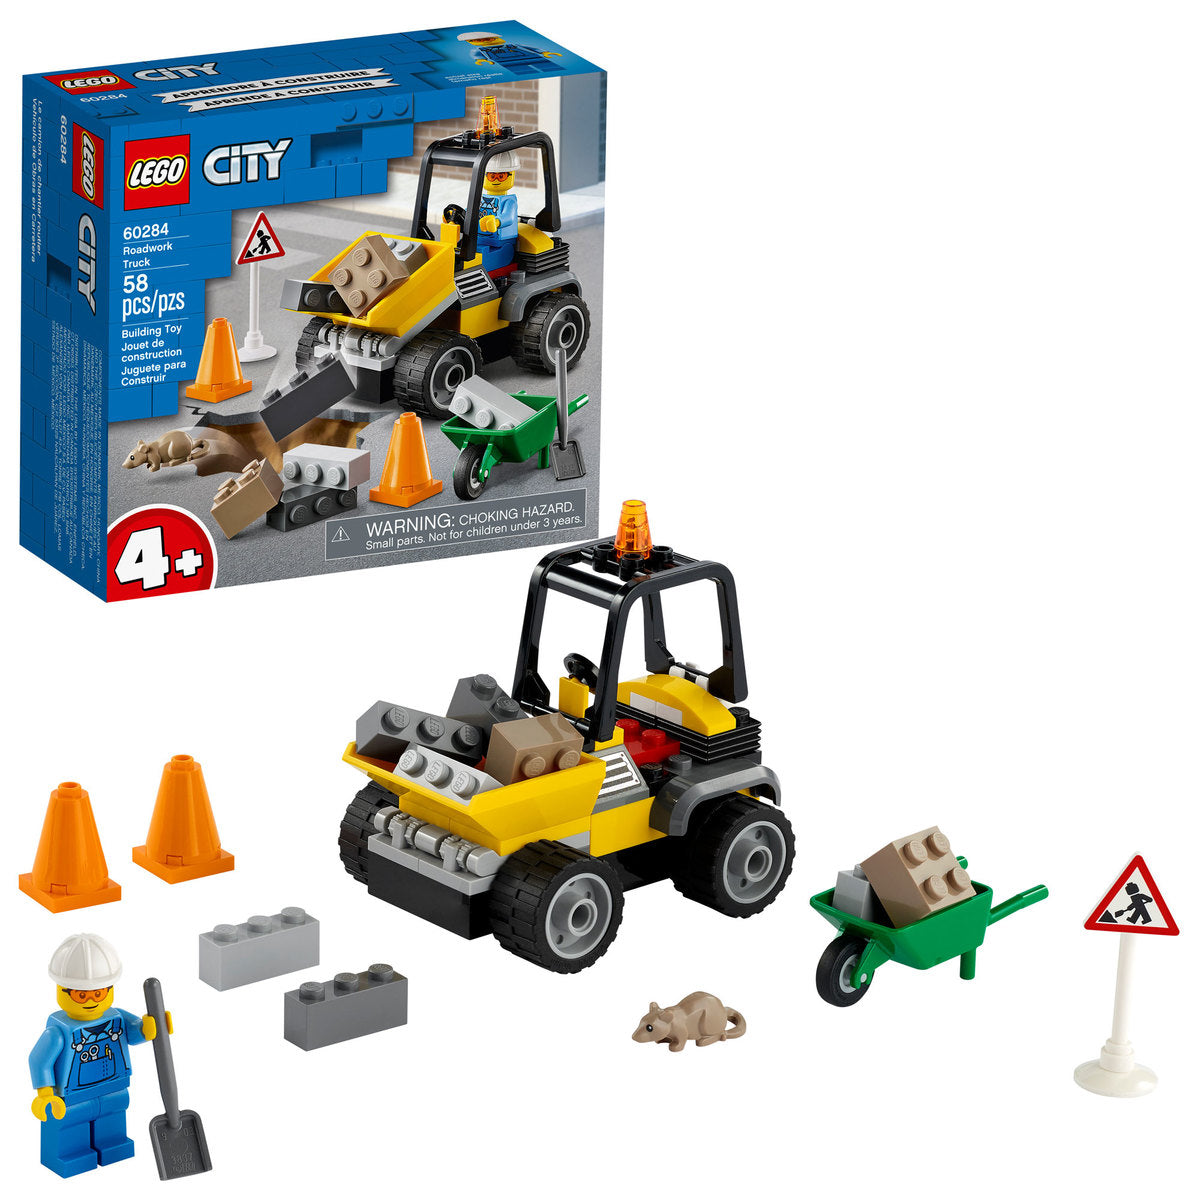 LEGO City Roadwork Truck - 60284